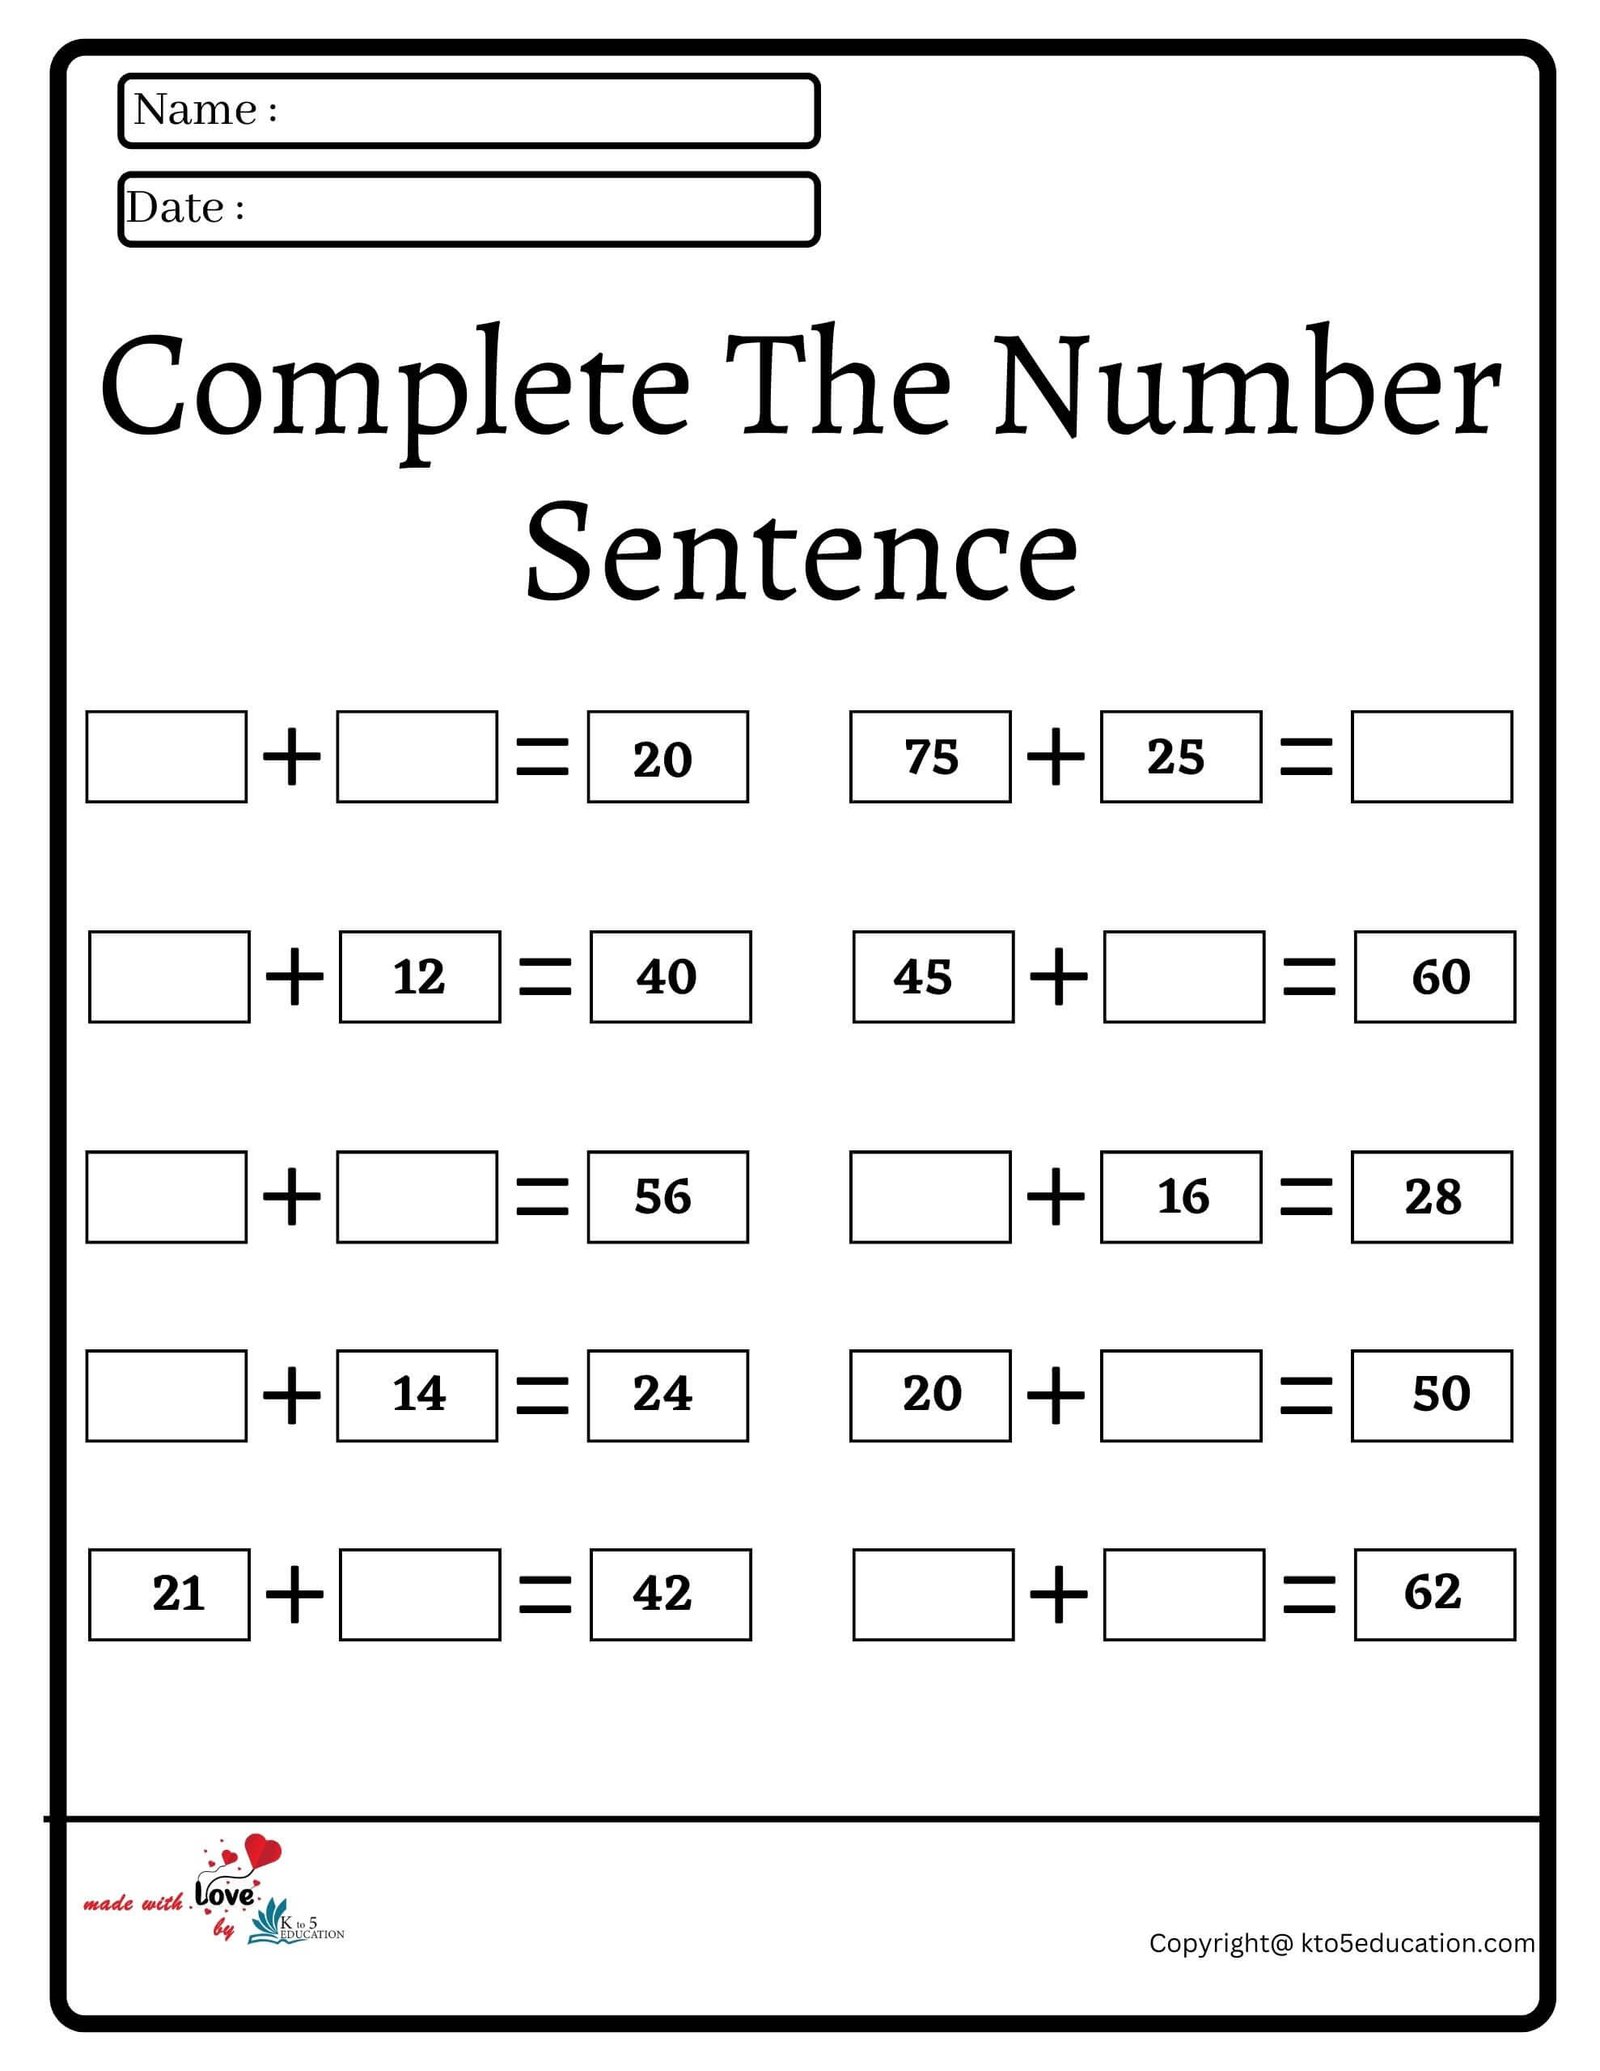 Complete The Number Sentence Worksheet